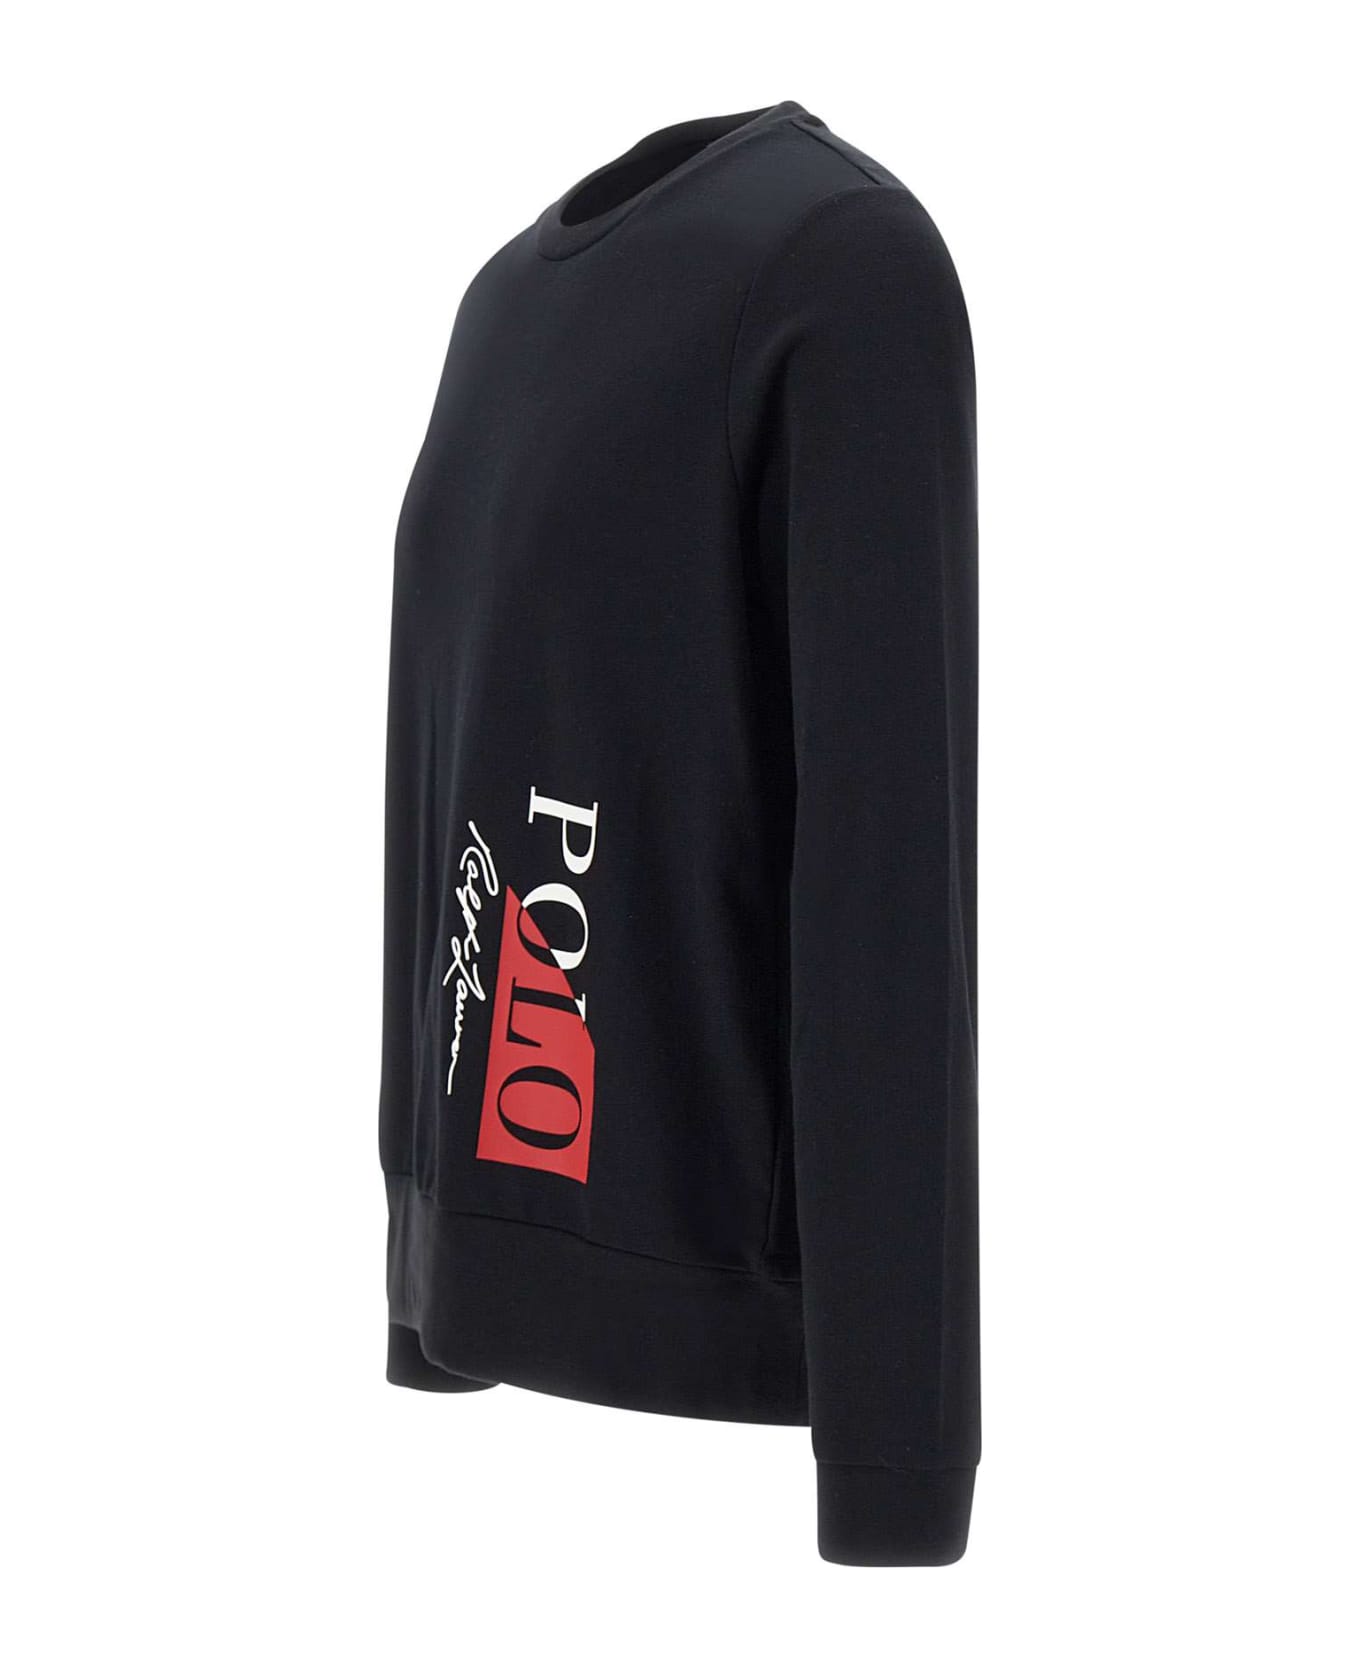 Polo Ralph Lauren Cotton Sweater - BLACK ニットウェア